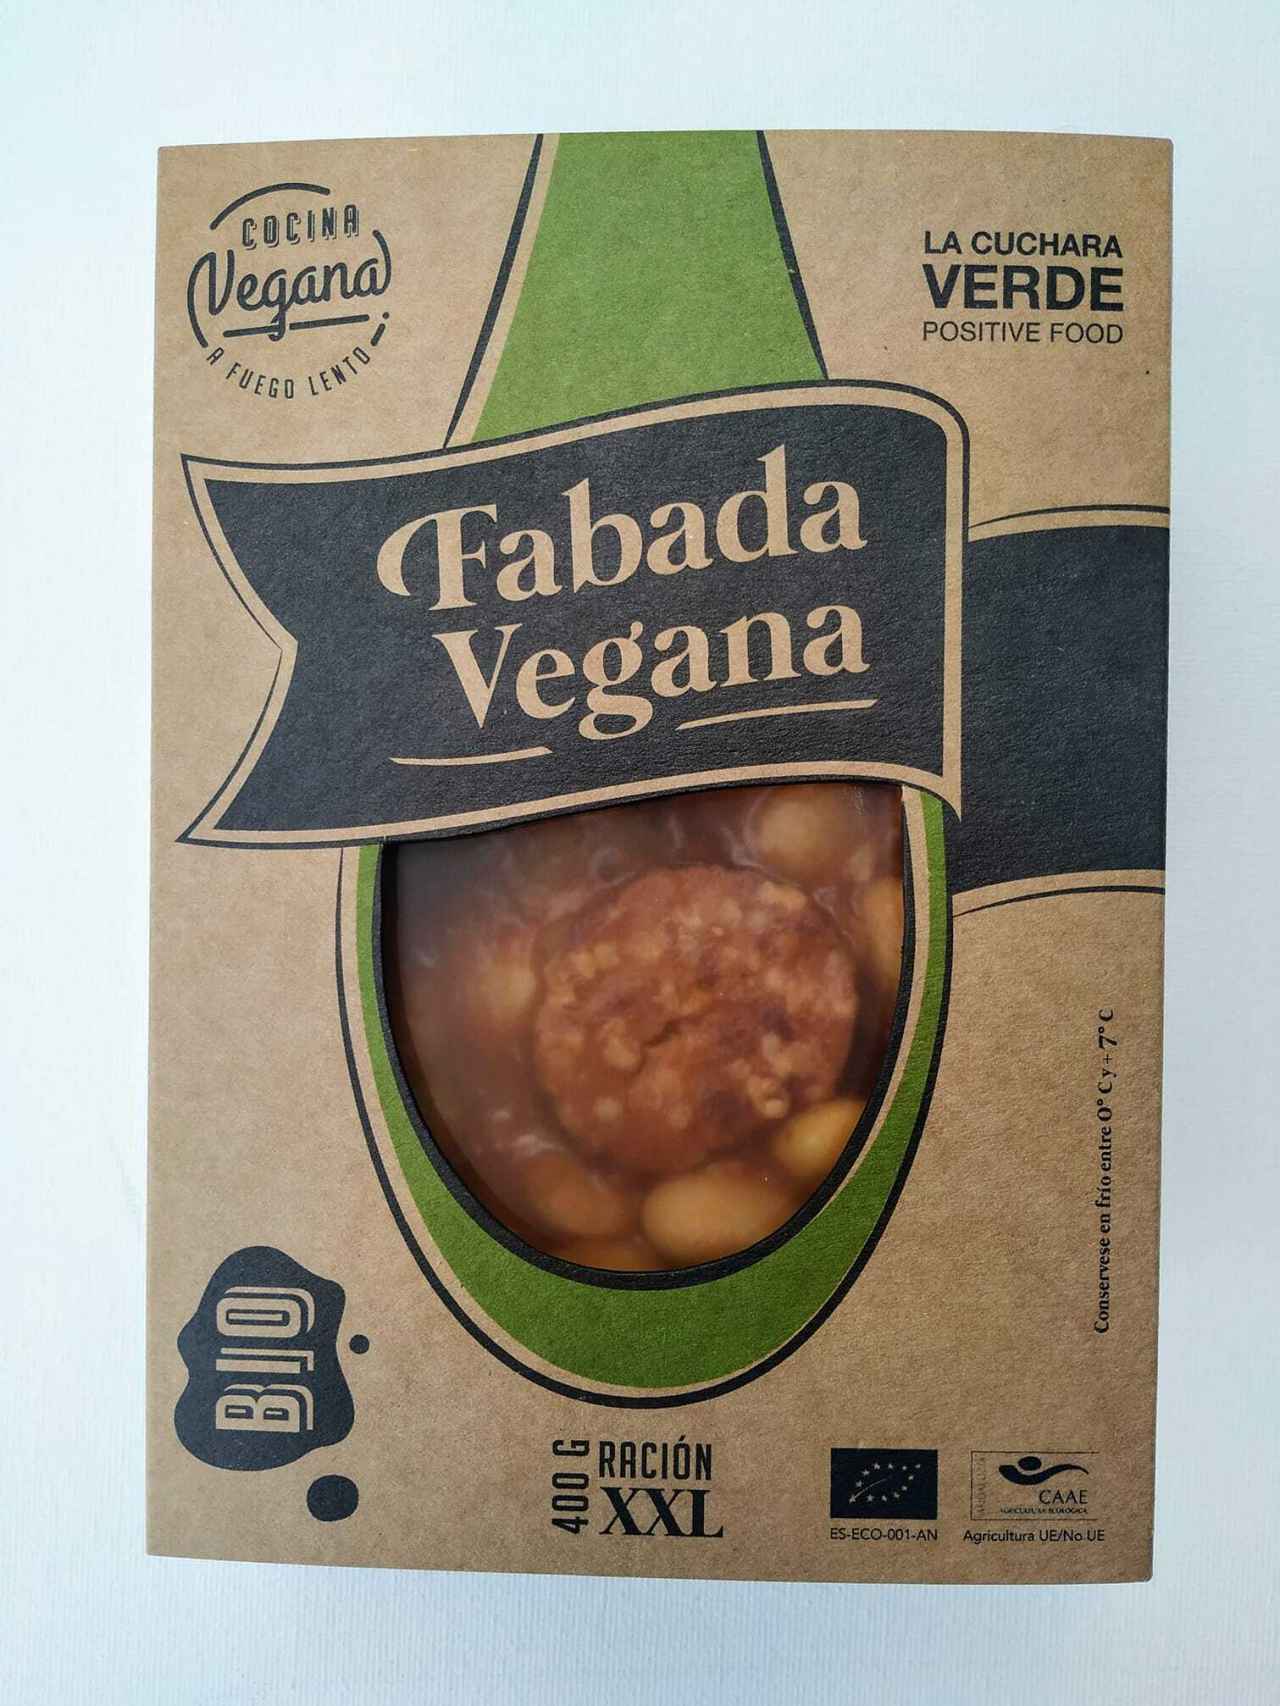 Imagen de un preparado de fabada vegana